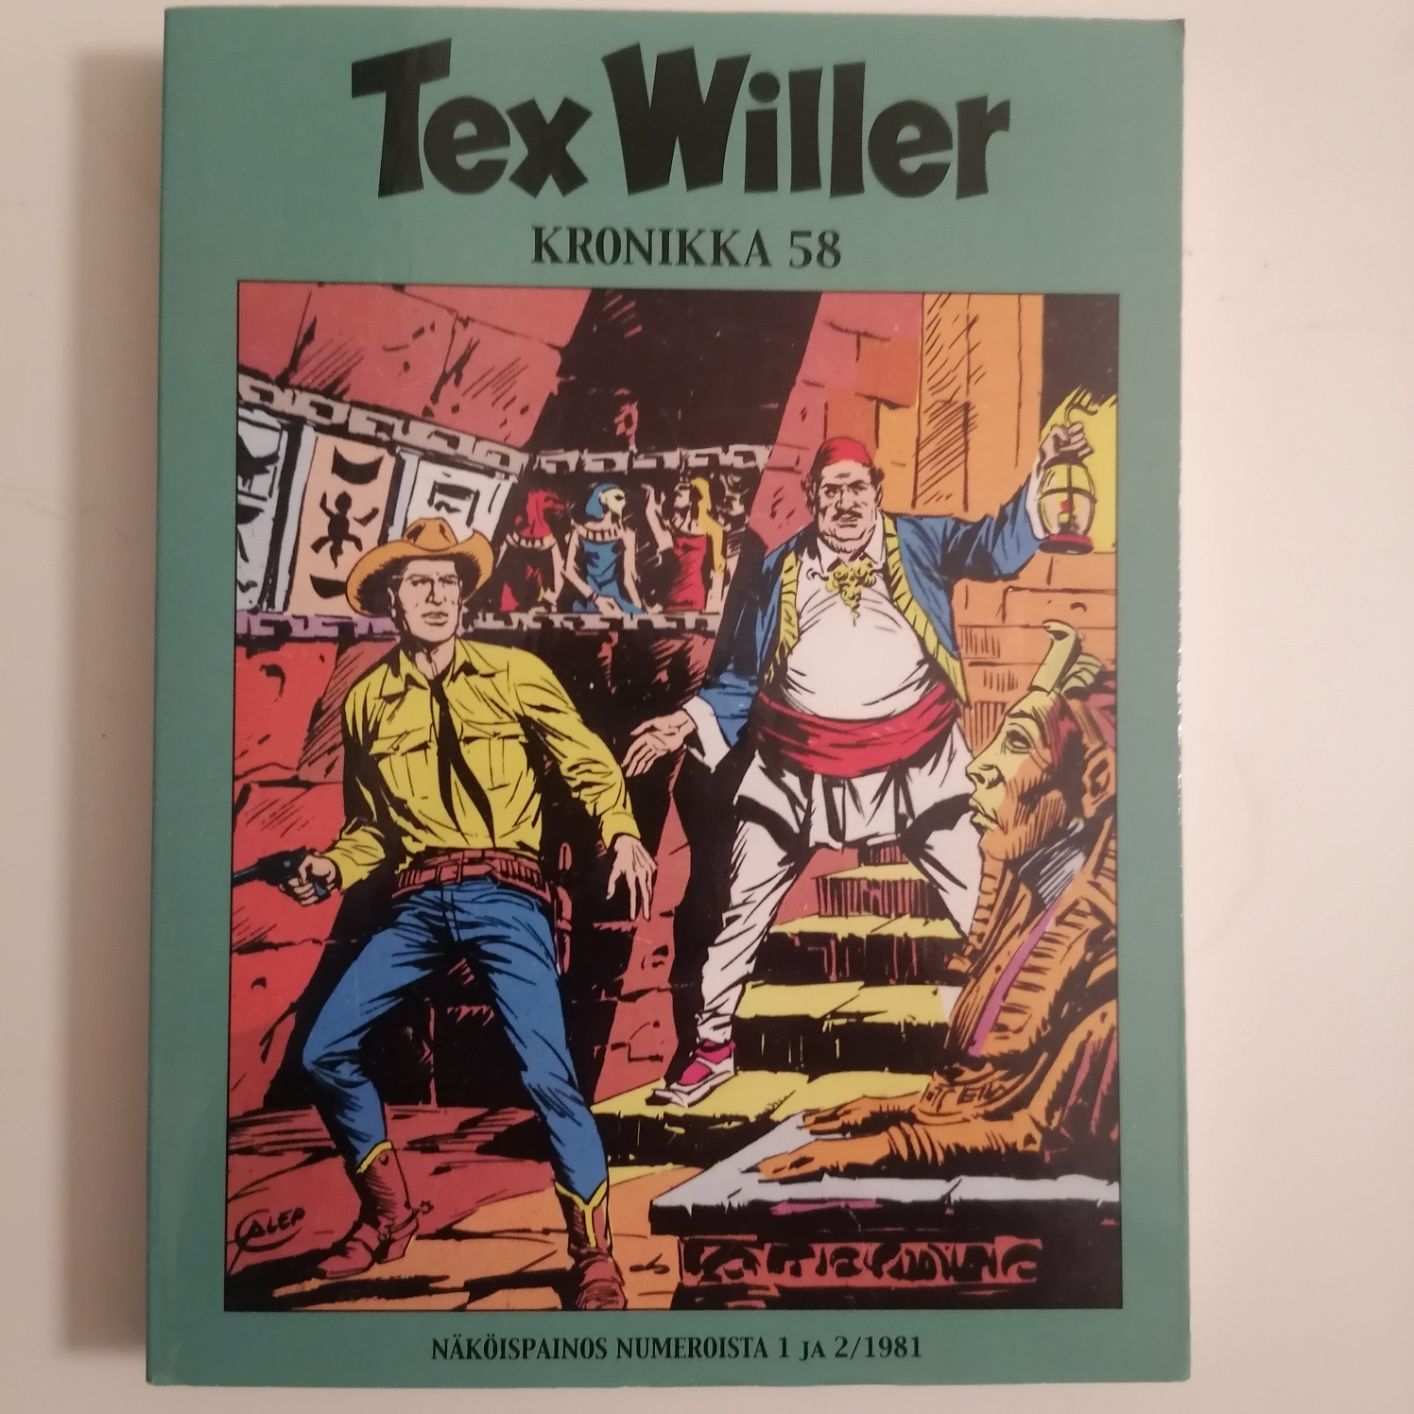 Tex Willer Kronikka 58 näköispainos 1 ja 2 / 1981 siistikuntoinen ja lukematon hinta 5,50 euroa.